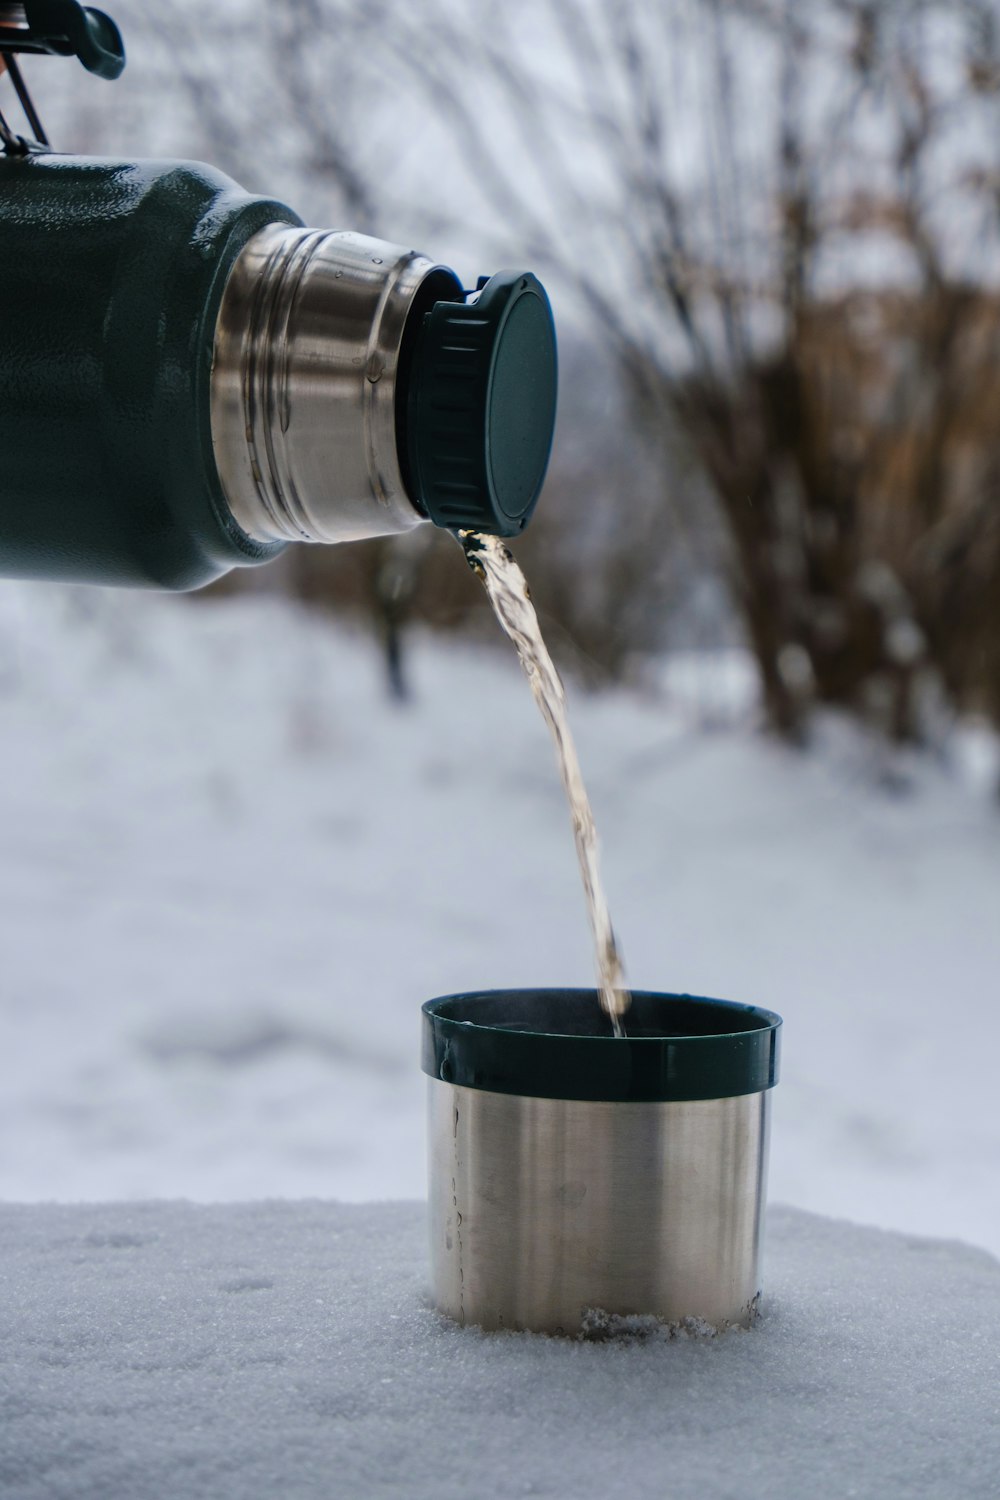 eine Person, die Wasser in eine Tasse im Schnee gießt